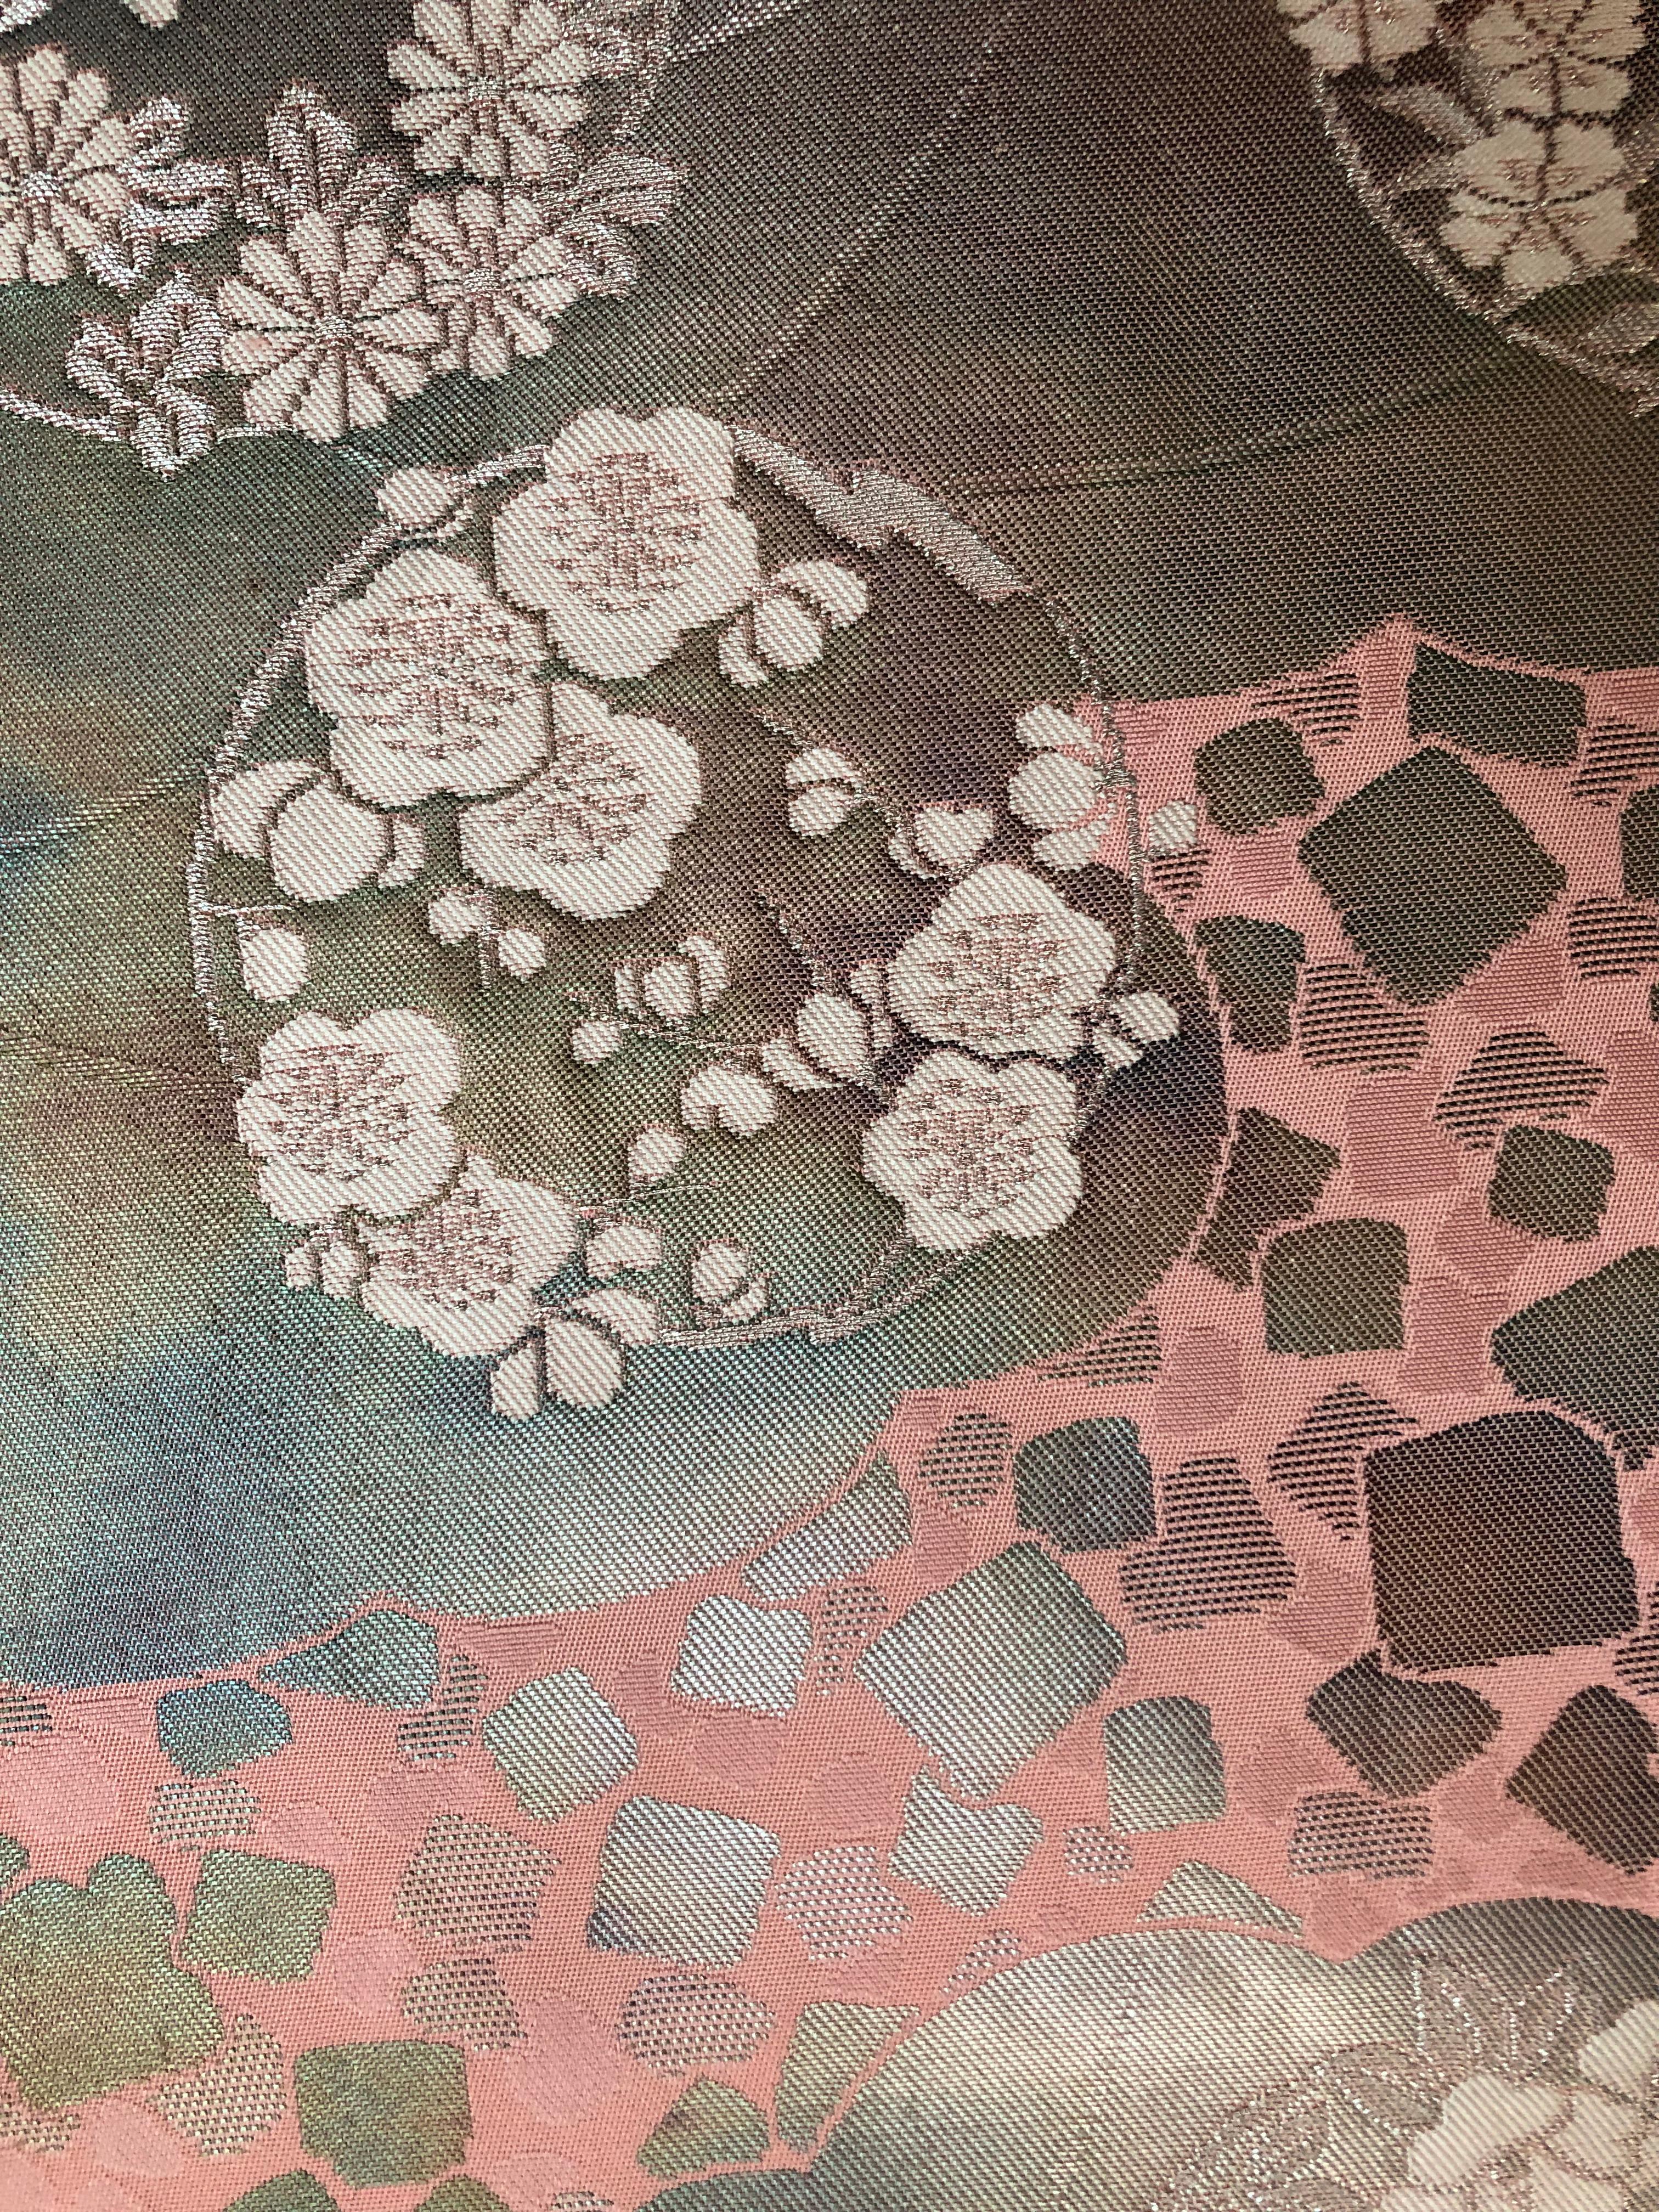 Japanische Kimono-Kunst von Kimono-Couture
Titel:Blumen der Saison

Diese japanische Kimono-Kunst ist ein einzigartiges Wandkunstwerk, das von japanischen Kunsthandwerkern in mühevoller Kleinarbeit hergestellt wird.
Die leuchtend rosa Farbe dieses